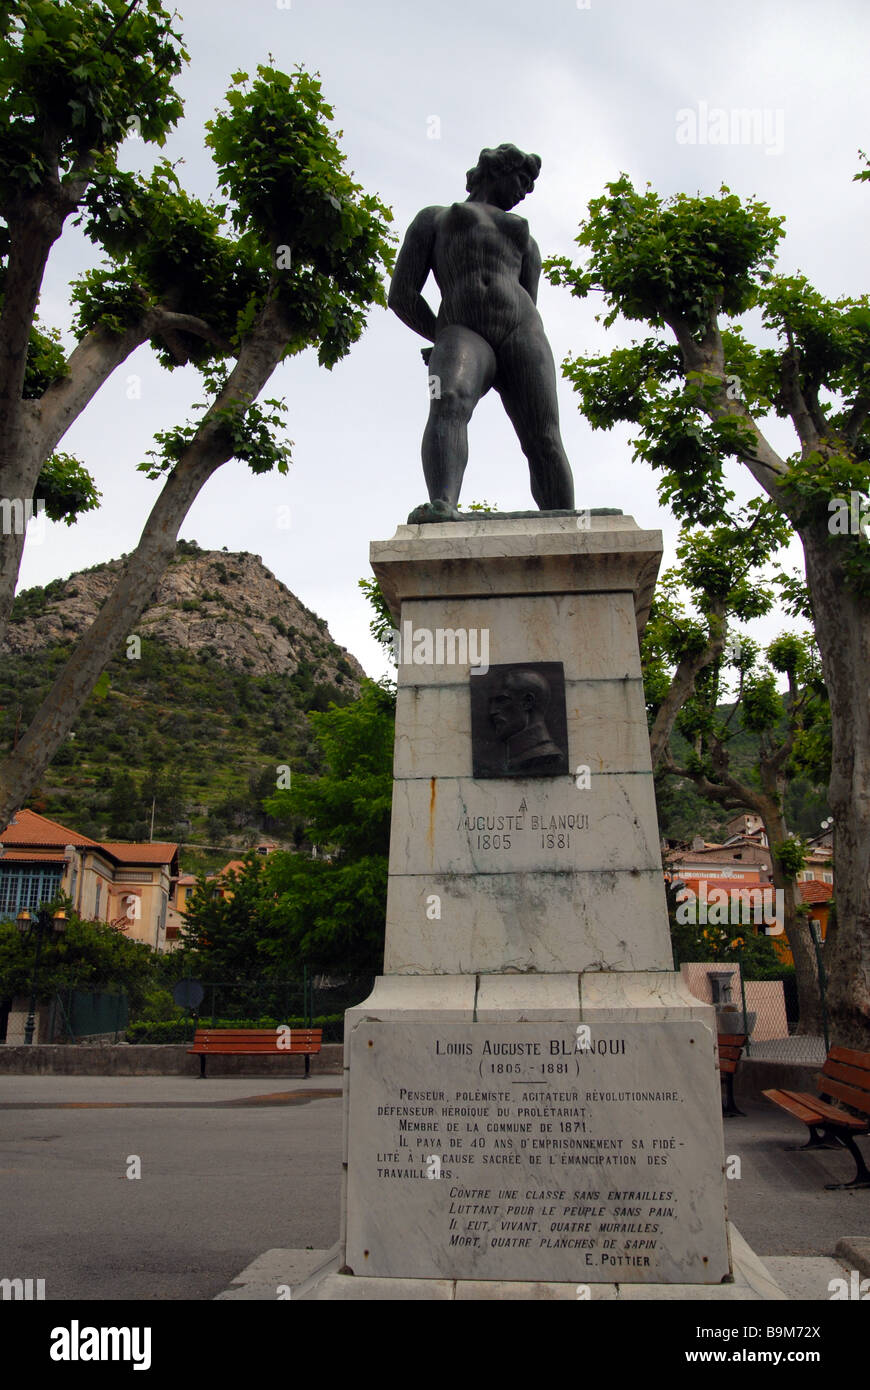 Puget Theniers, France, Cote d' Azure - Statue of Louis Auguste Blanqui Stock Photo